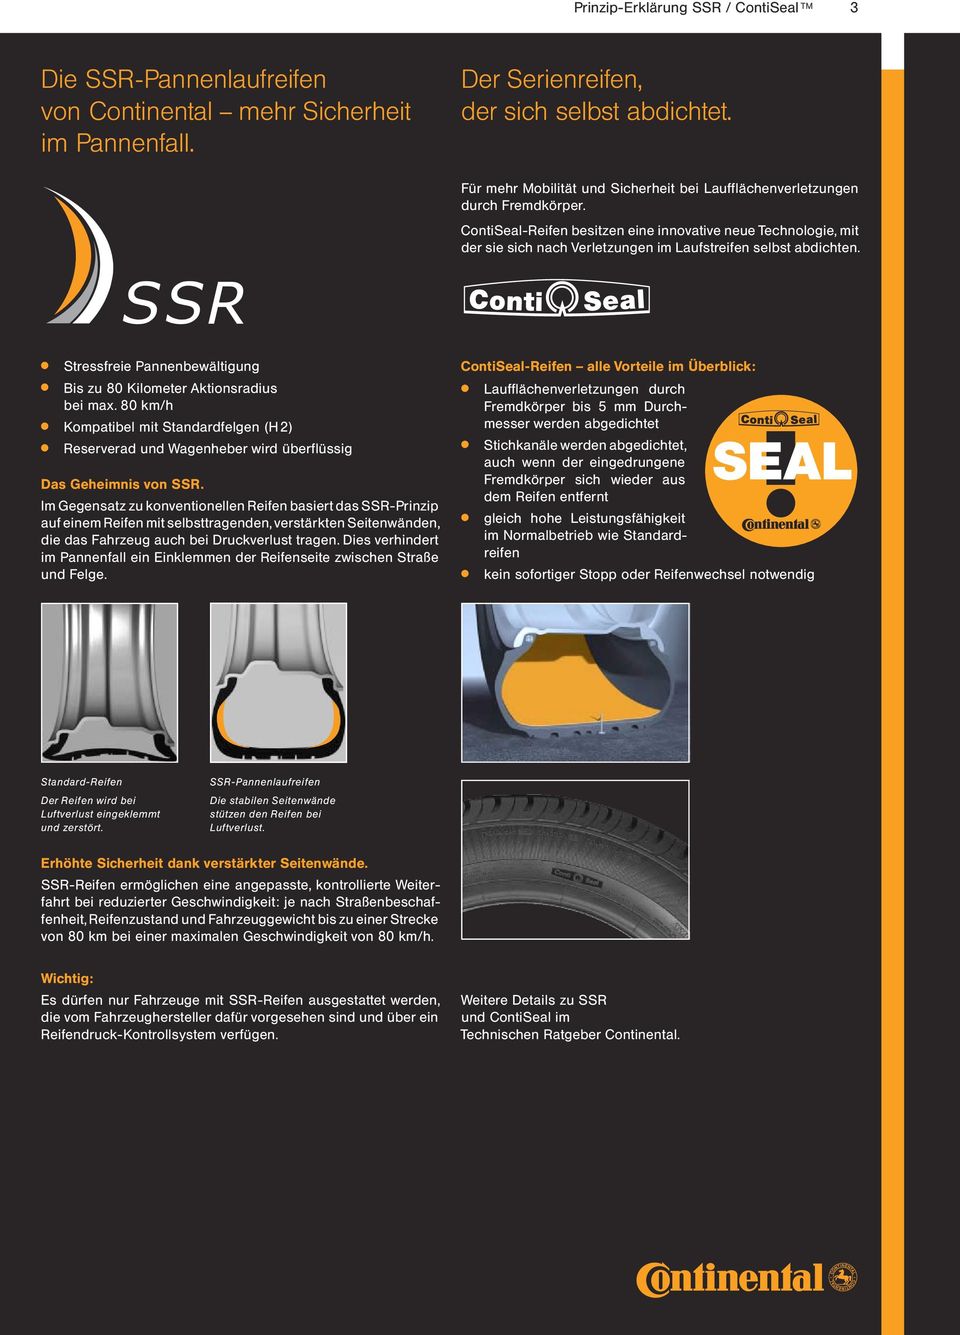 ContiSeal-Reifen besitzen eine innovative neue Technologie, mit der sie sich nach Verletzungen im Laufstreifen selbst abdichten.